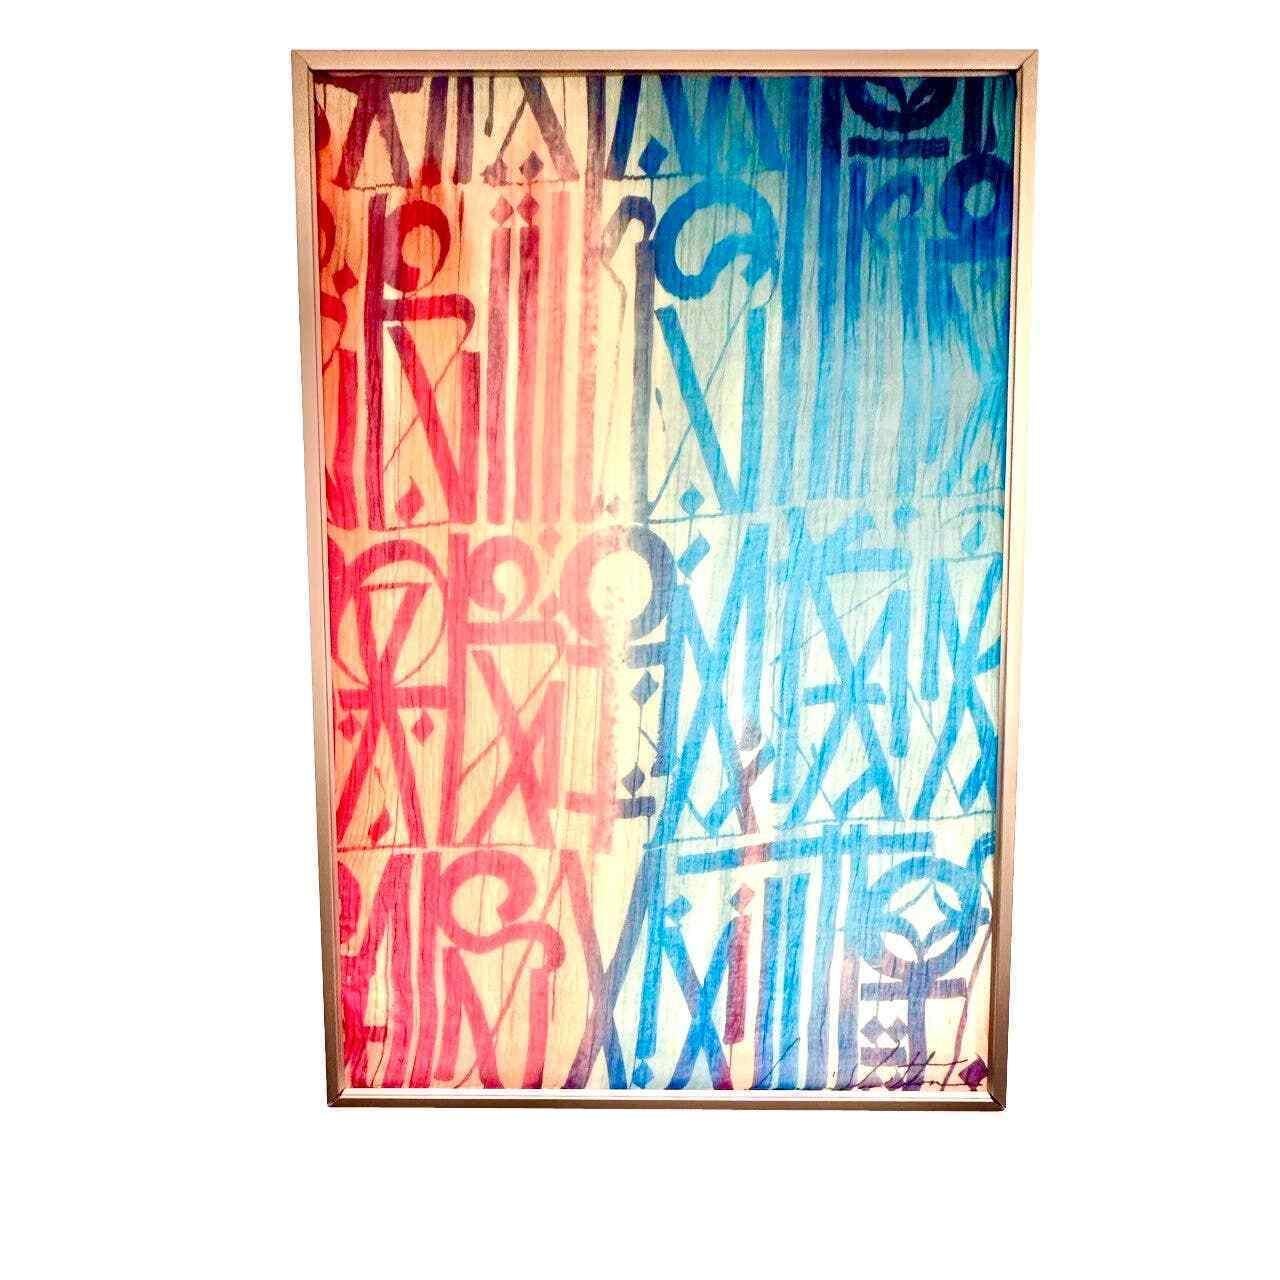 RETNA - Water Colours of Graffiti LV Collection'S, 2013

RETNA (Marquis Lewis), der international bekannte Straßenkünstler, dessen charakteristische Hieroglyphen bei Sammlern auf beiden Seiten des Atlantiks sehr begehrt sind

Das berühmte